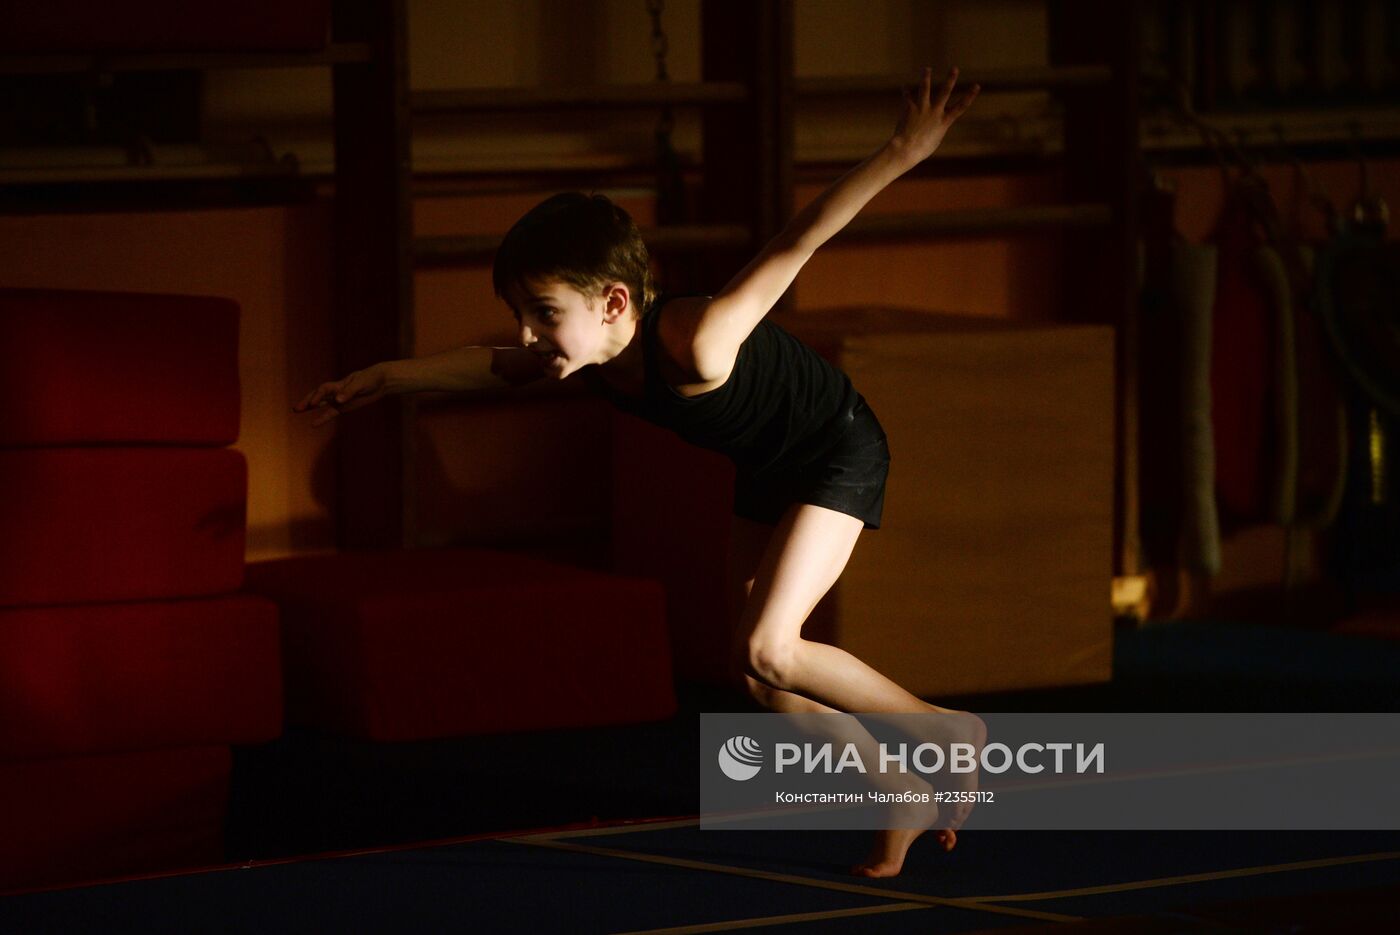 Тренировка по гимнастике в спорткомплексе "Манеж" в Великом Новгороде